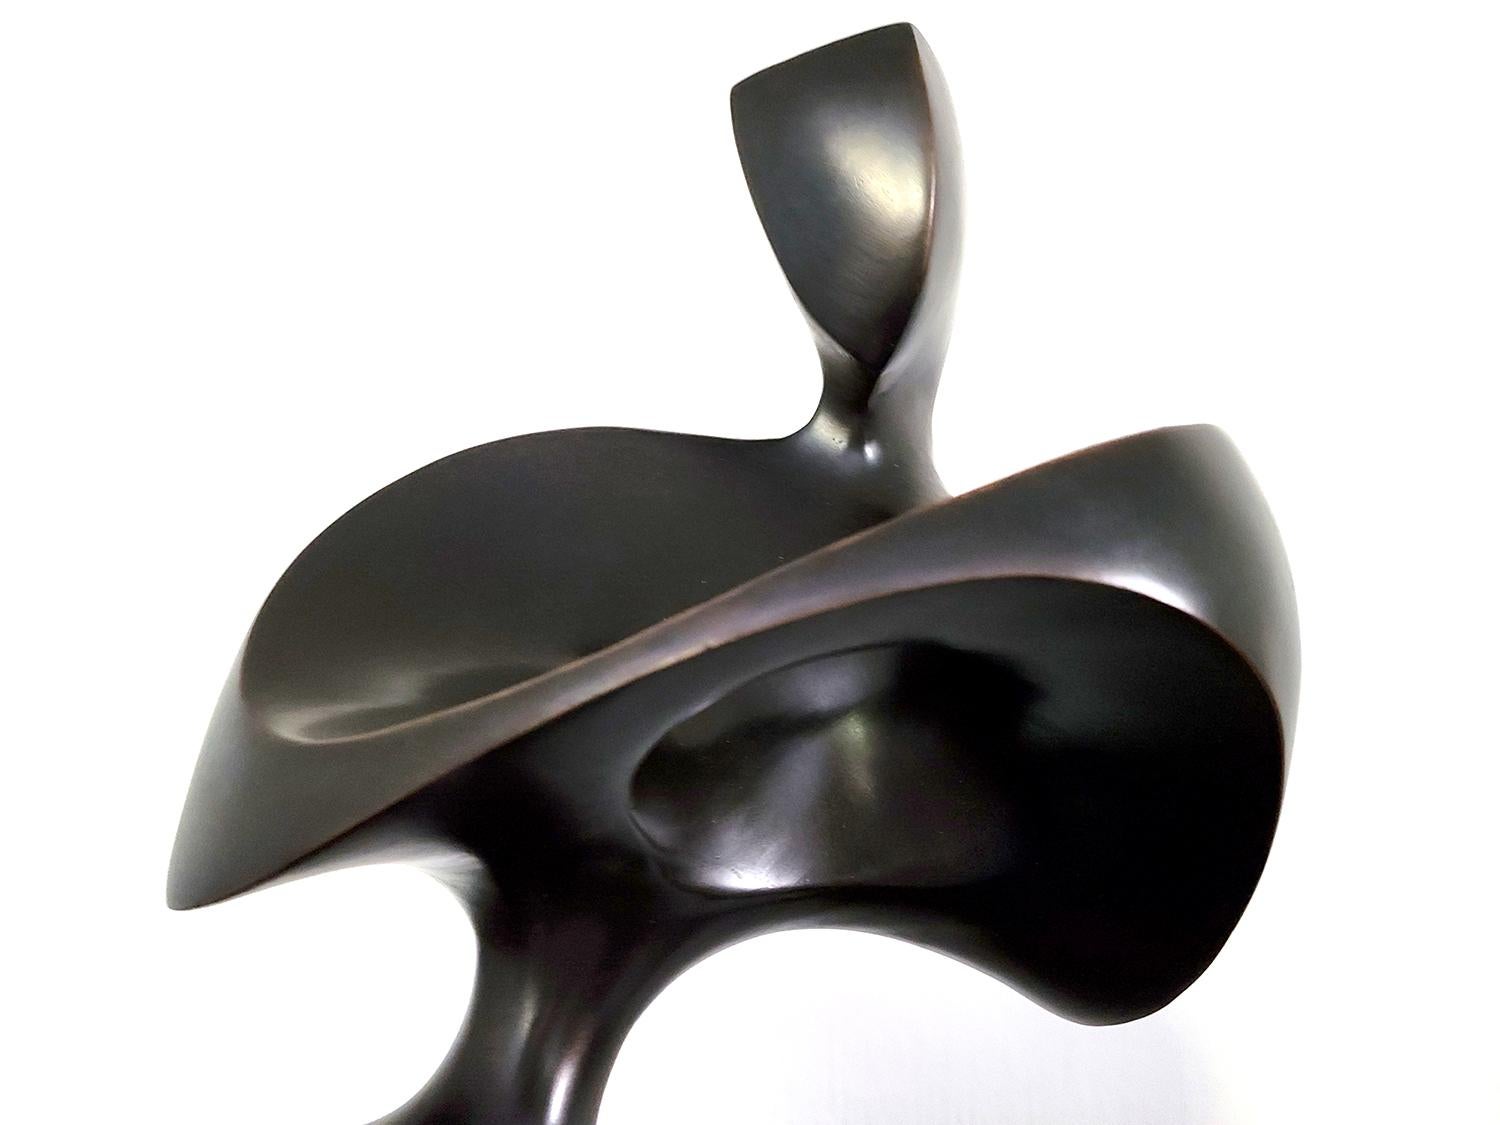 Diese ebenso elegante wie klassische Skulptur ist das Werk von Jeremy Guy. Die anmutige Form einer weiblichen Figur  aus dem schwarzen Granit auftaucht. Guy wurde lange Zeit von den berühmten britischen Bildhauern Henry Moore und Barbara Hepworth